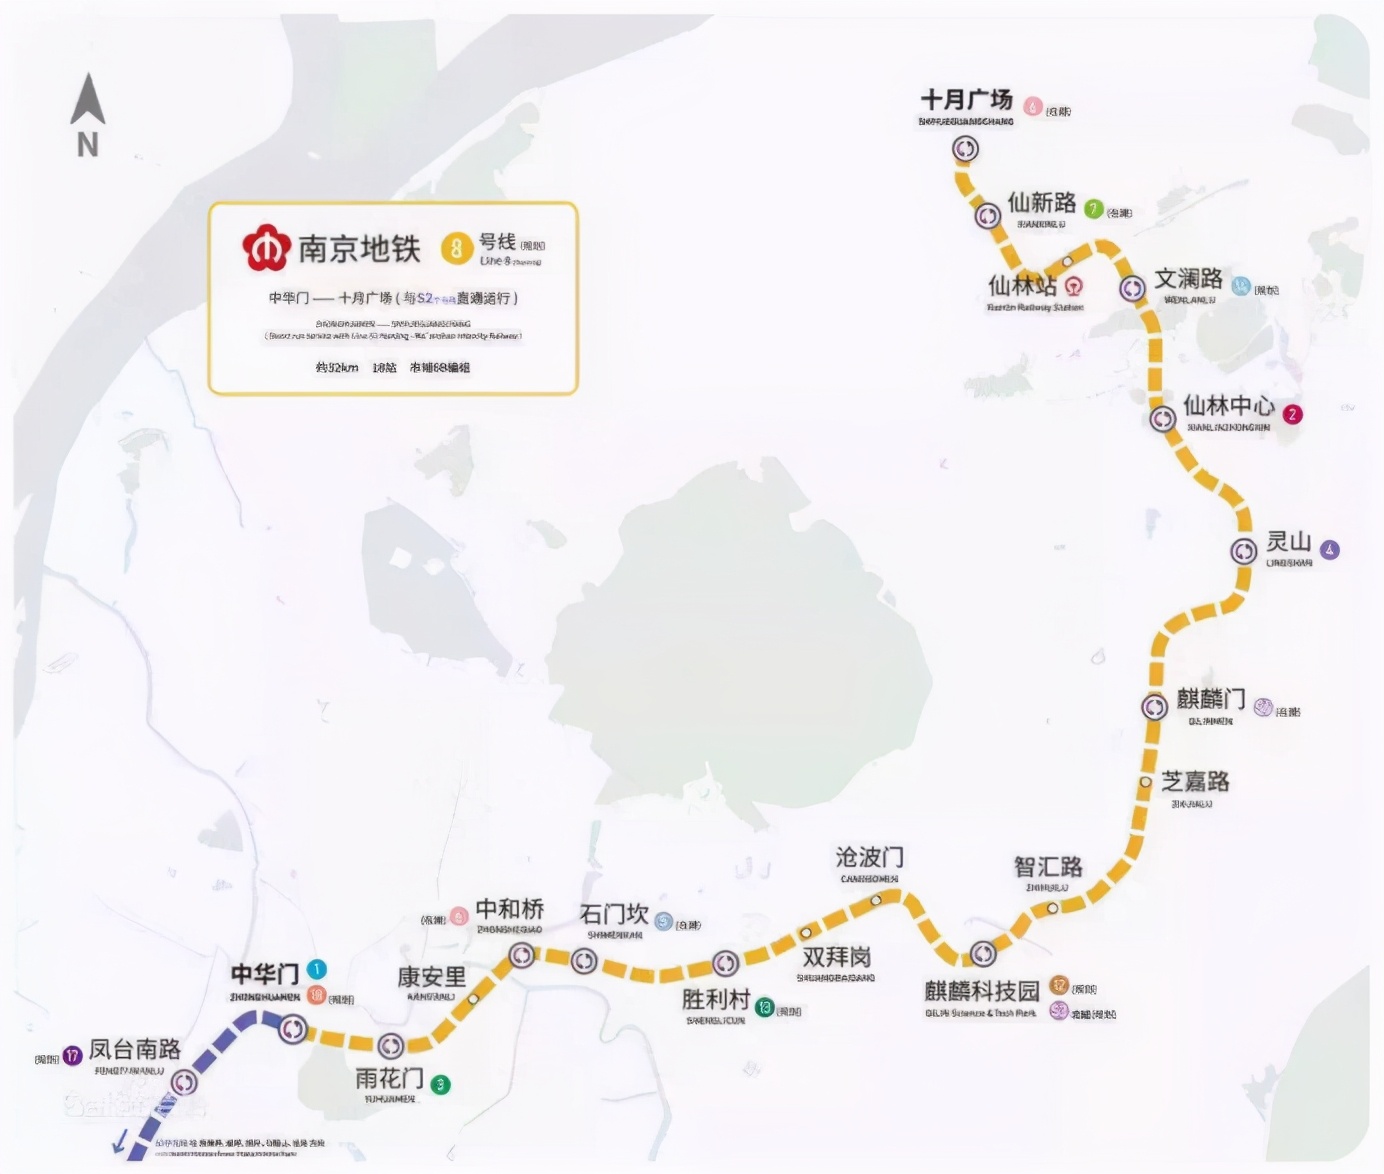 根据南京楼市报道,在南京地铁宣传视频中,8号线出现了!